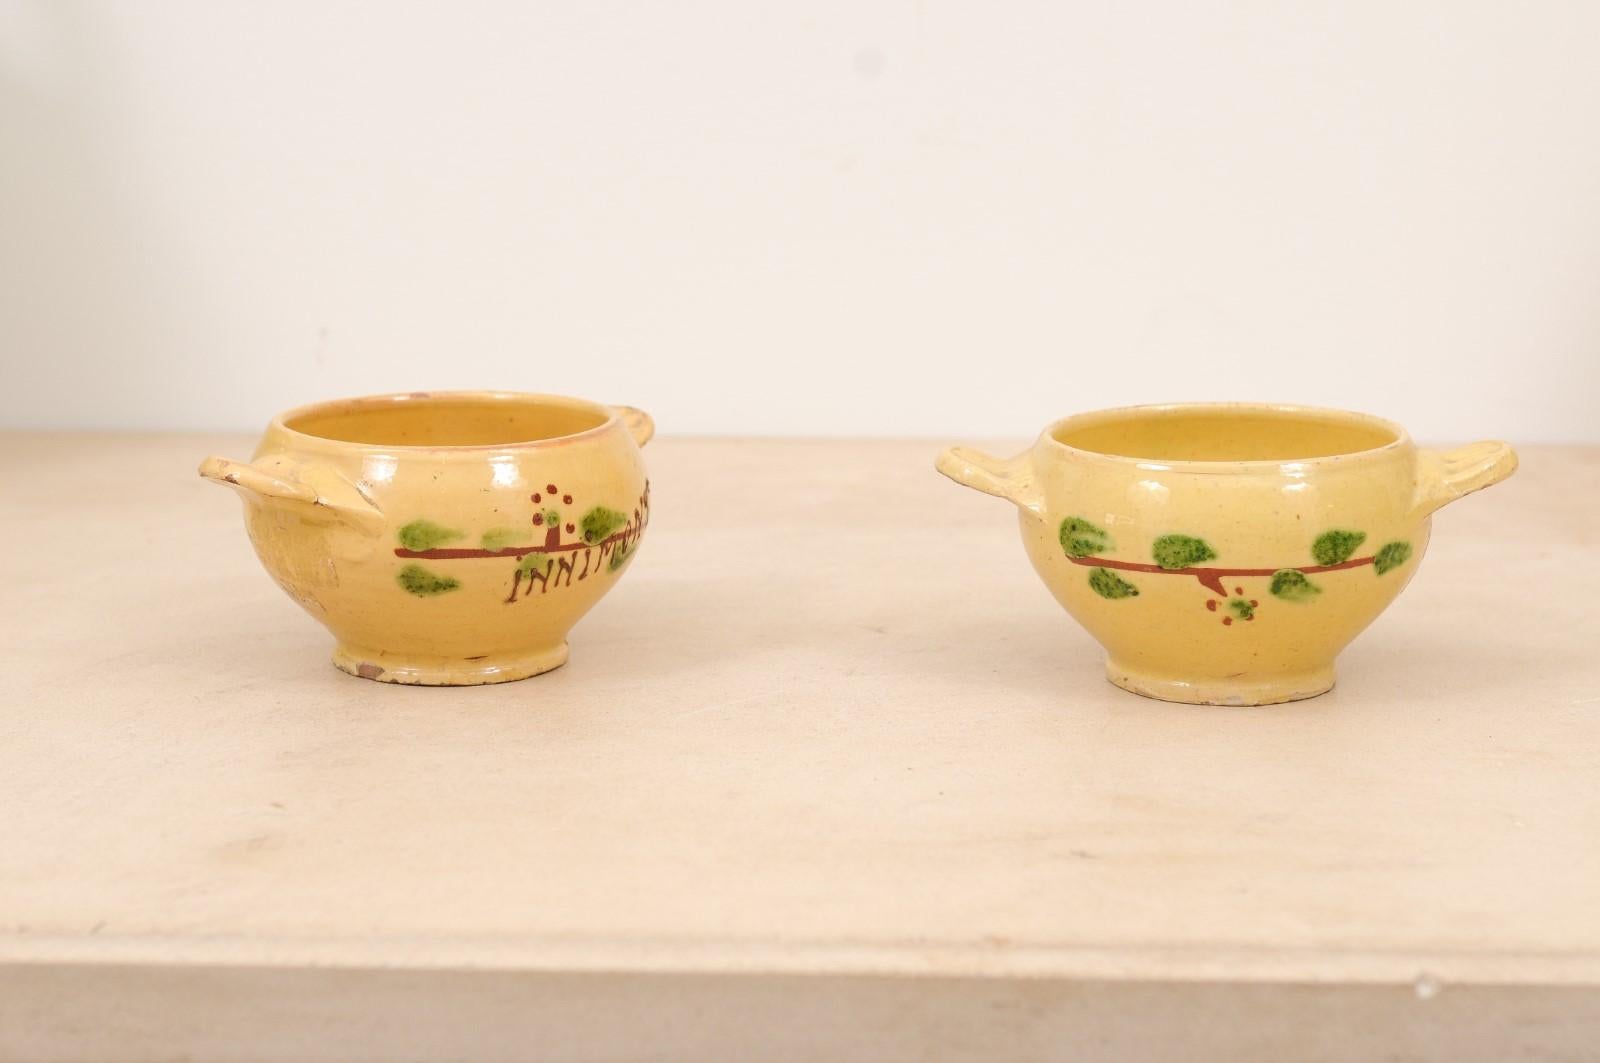 Zwei kleine gelb glasierte französische Trinkgefäße aus der Stadt Innimont aus dem 19. Jahrhundert mit stilisierten Blättermotiven, die separat verkauft werden, je 295 $. Diese beiden kleinen Keramikschalen wurden im 19. Jahrhundert in Ostfrankreich